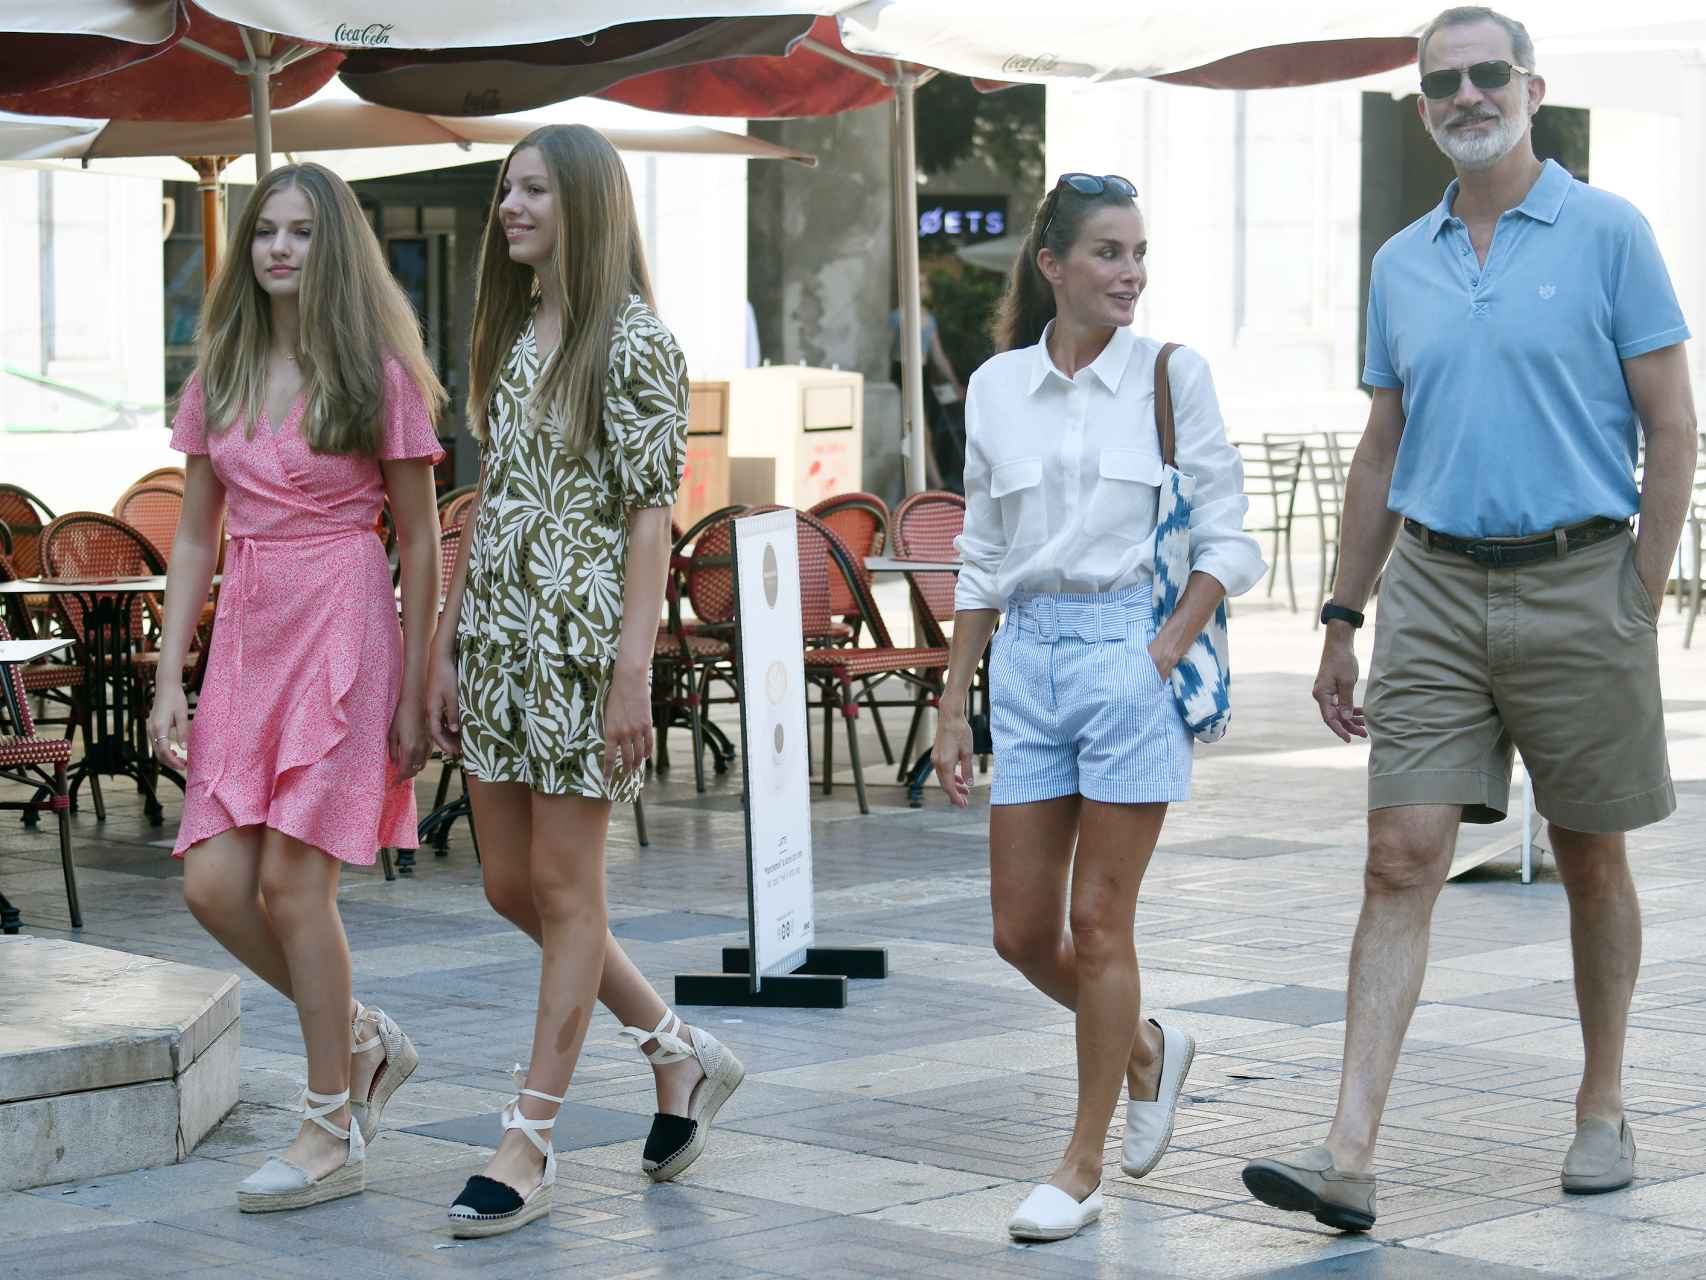 Última aparición pública de la Familia Real este verano, el 10 de agosto, en Palma de Mallorca.